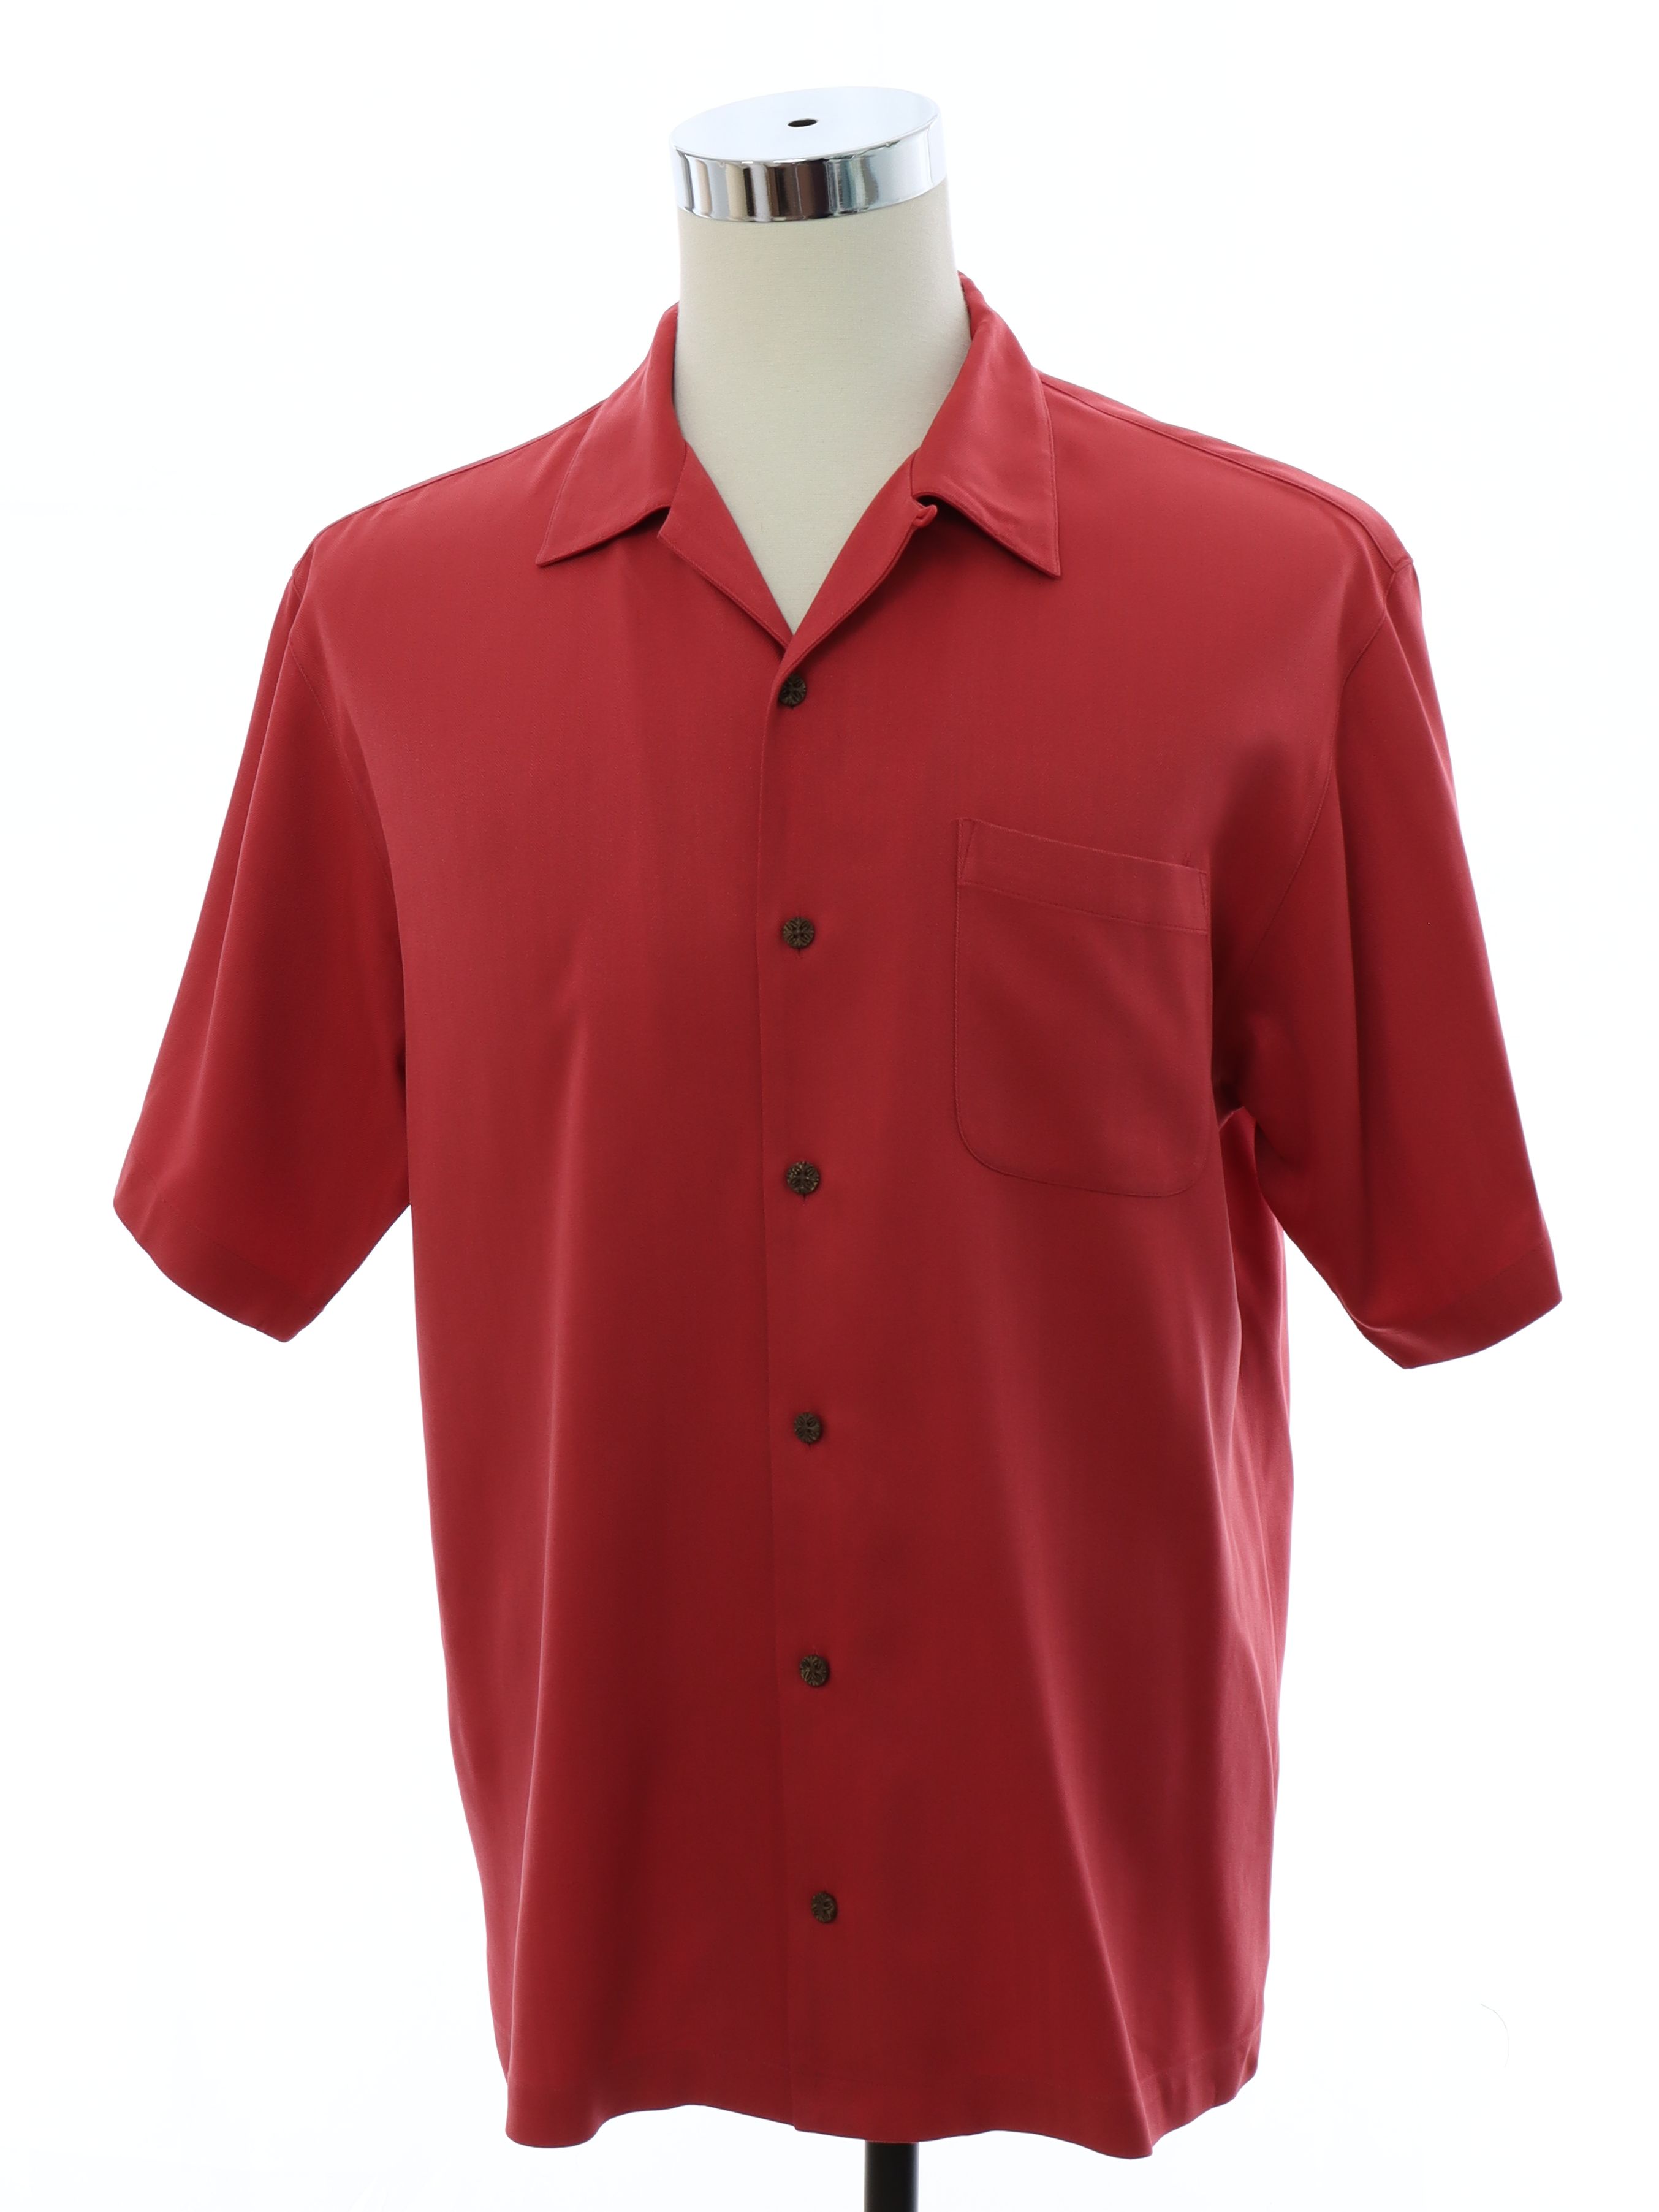 Hawaiian Shirt: 90s -Tommy Bahama- Mens red background heavy